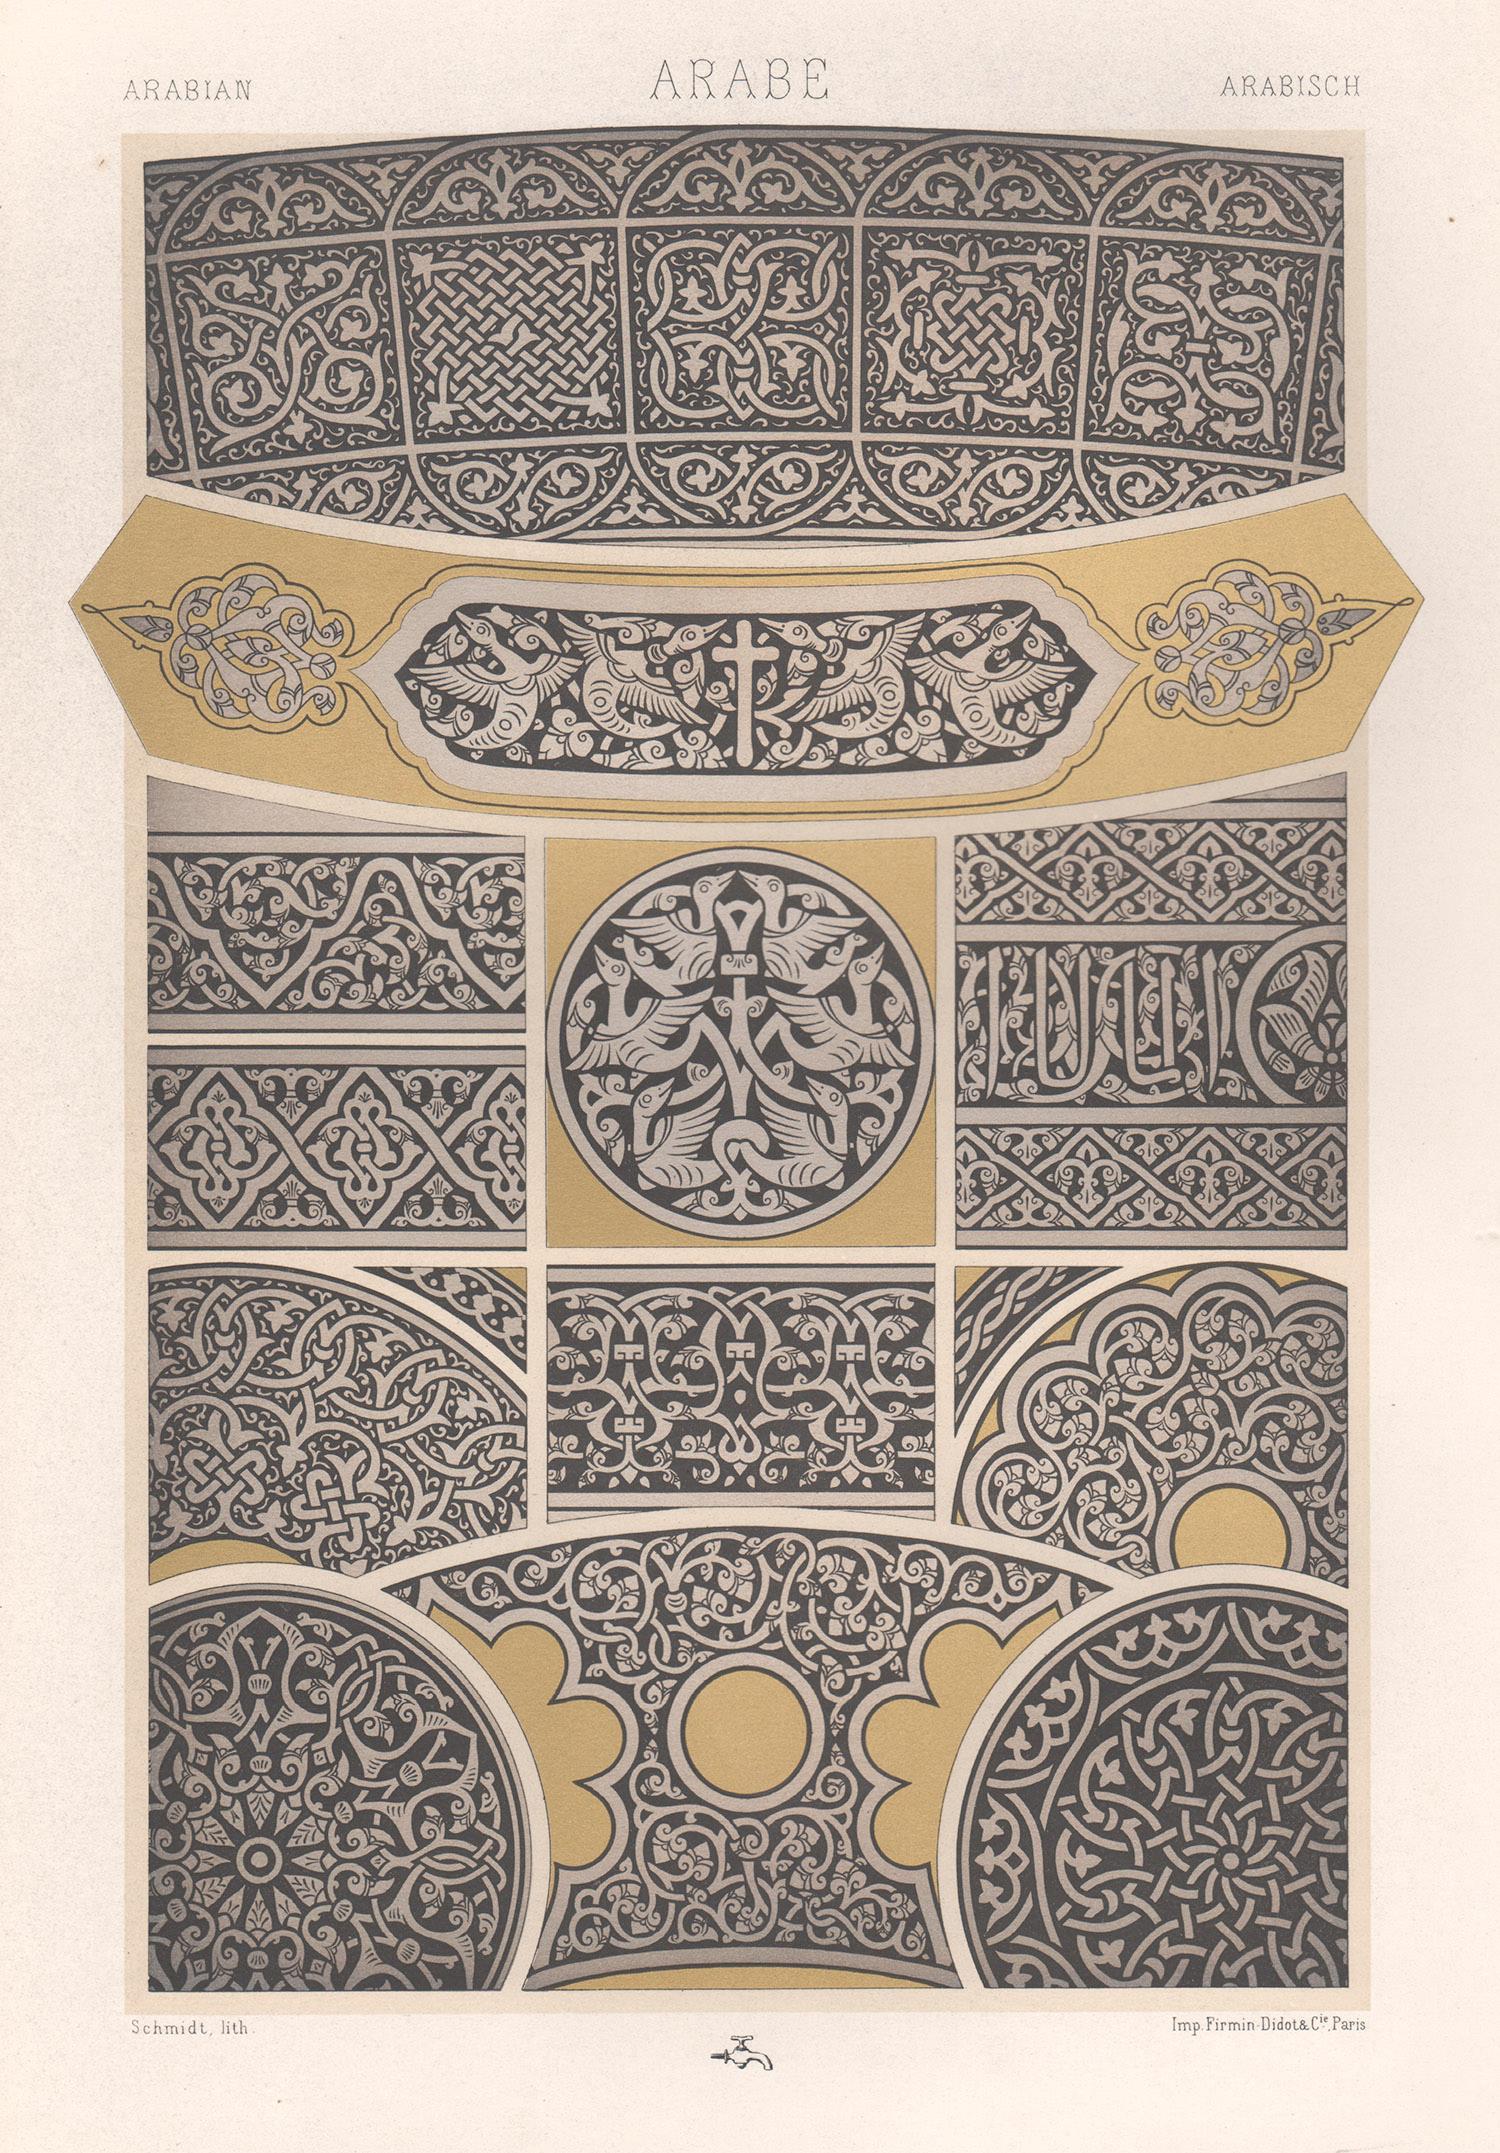 Albert-Charles-Auguste Racinet Abstract Print – Arabianischer, französischer antiker Racinet-Kunstdesign-Lithographiendruck aus dem 19. Jahrhundert